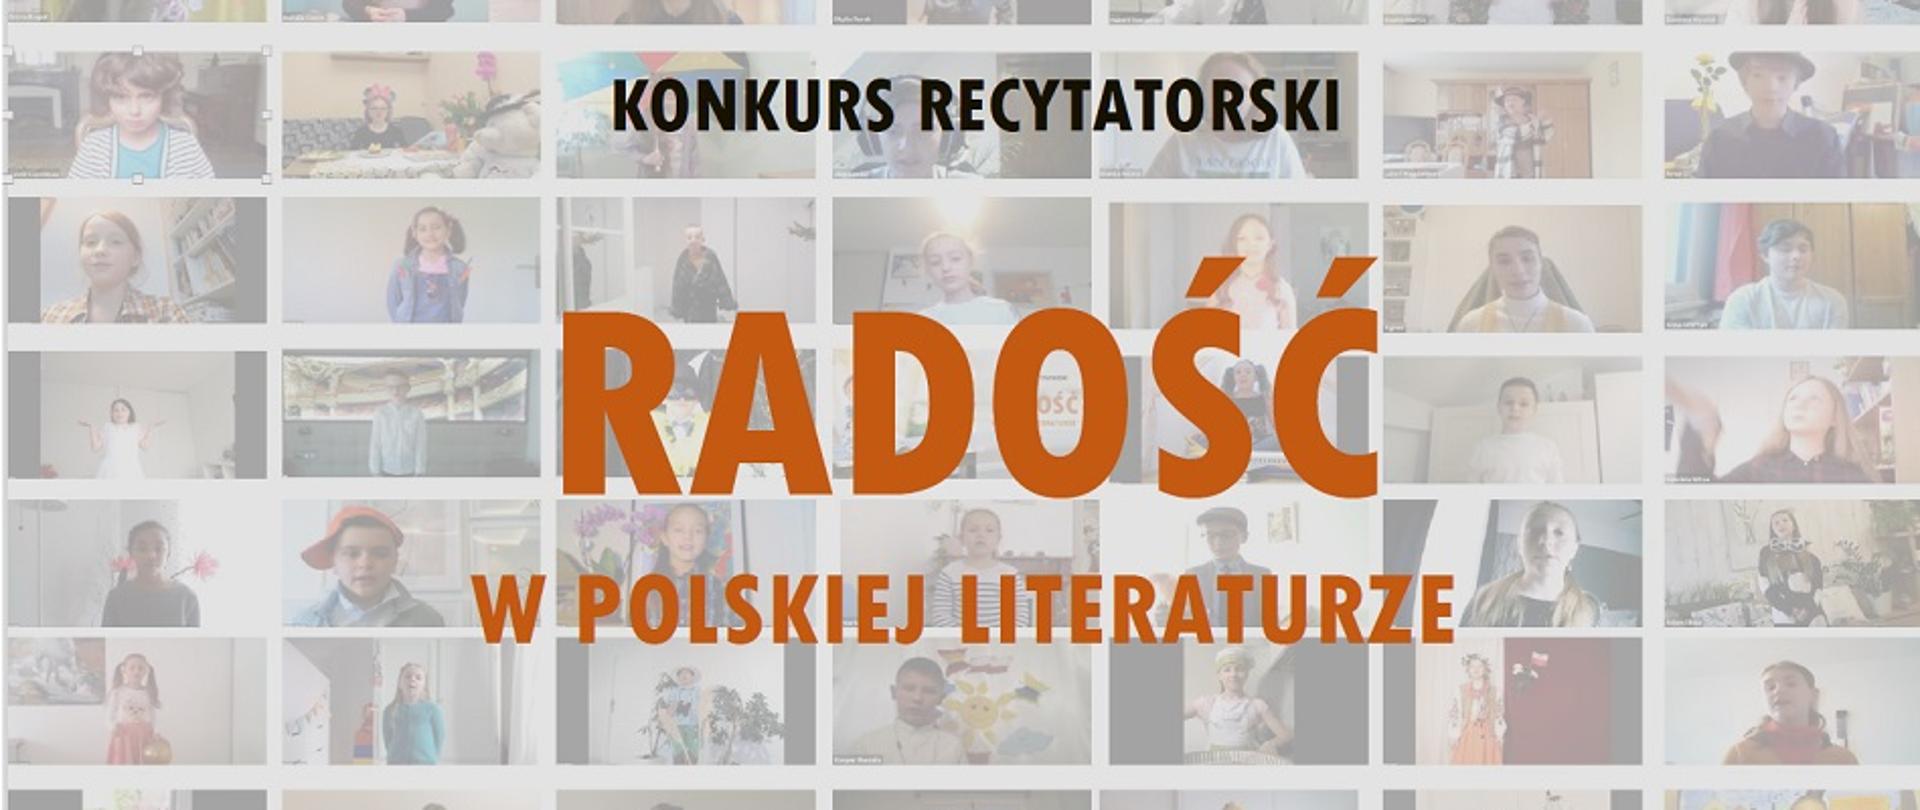 Radość w polskiej literaturze